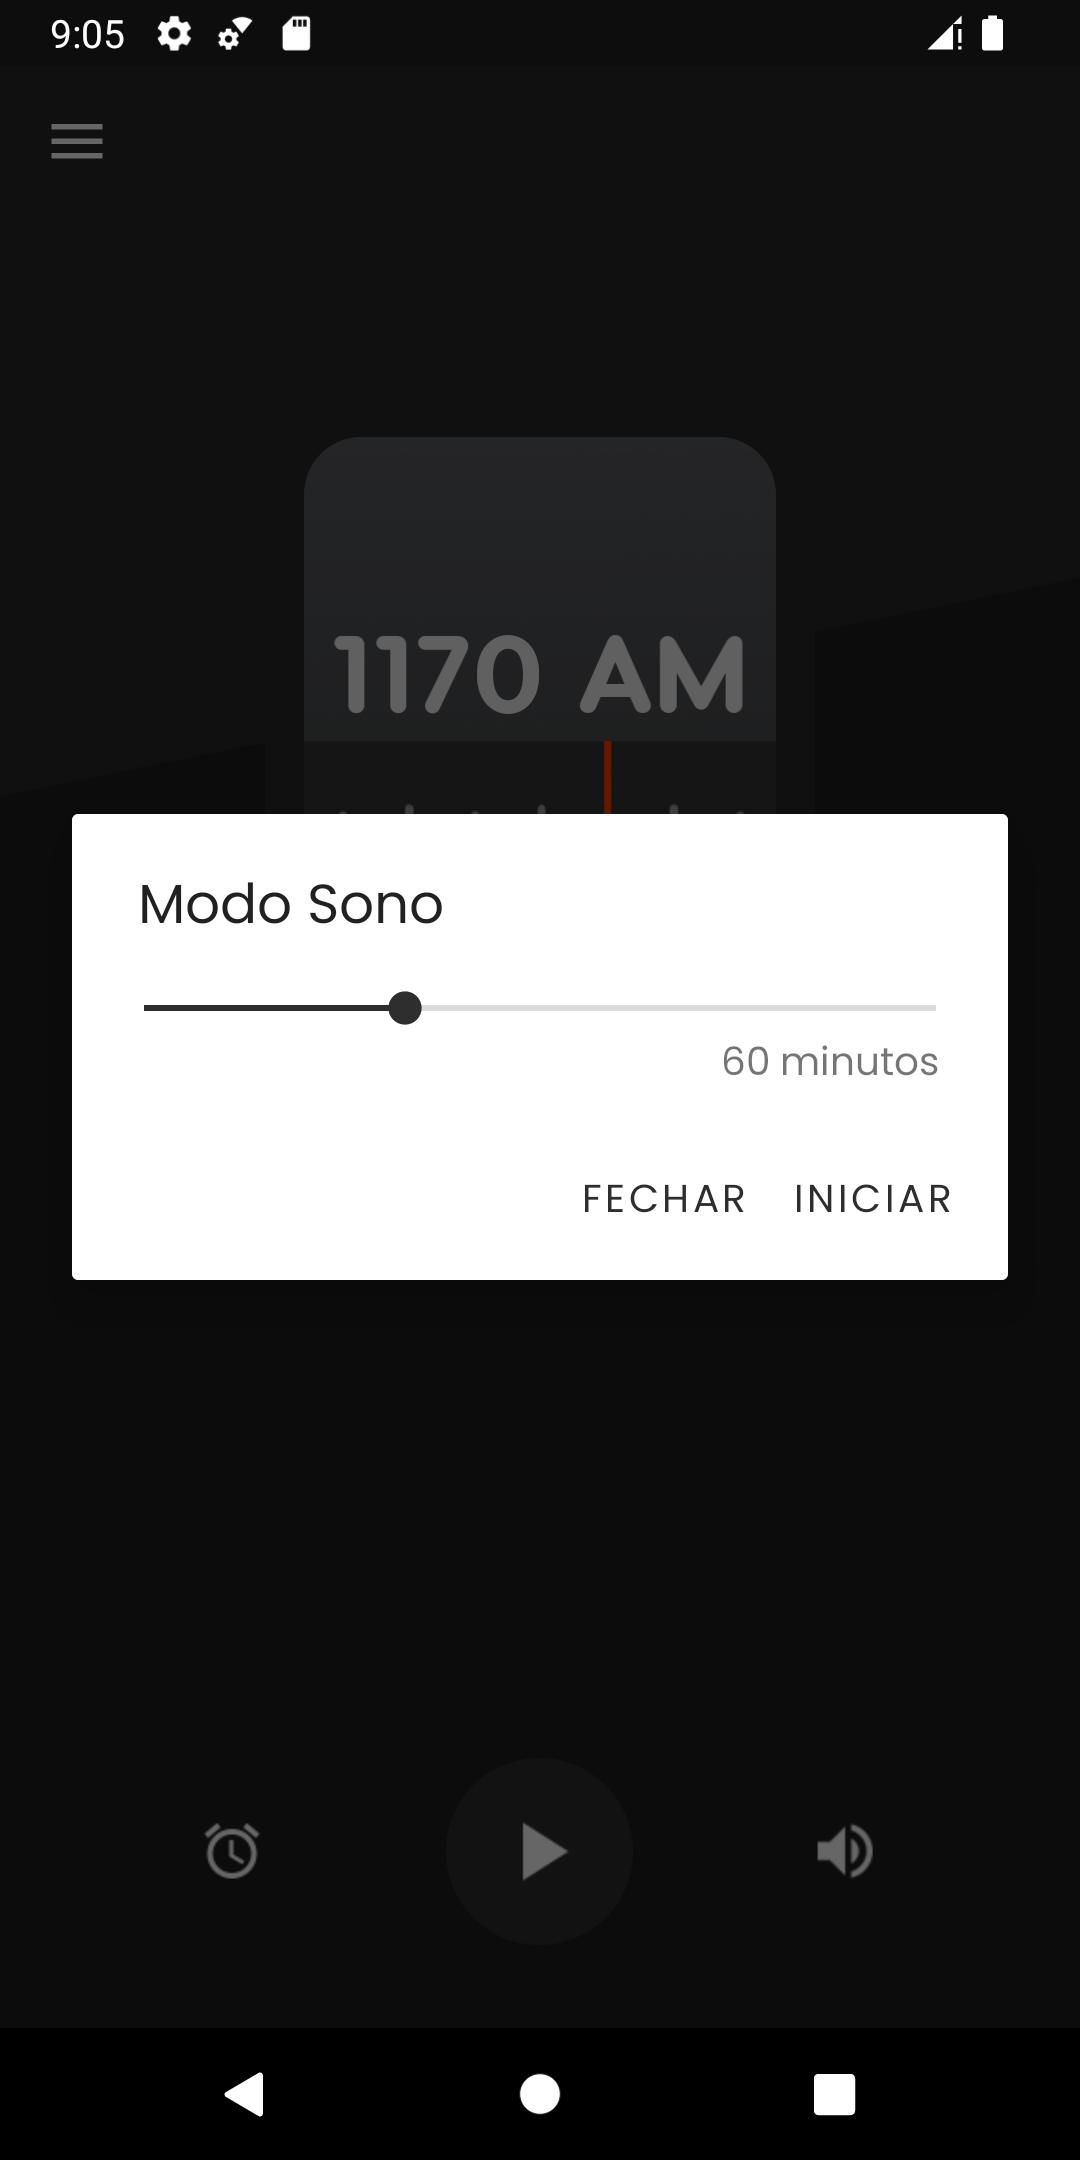 Caiobá FM 102,3 Curitiba-PR